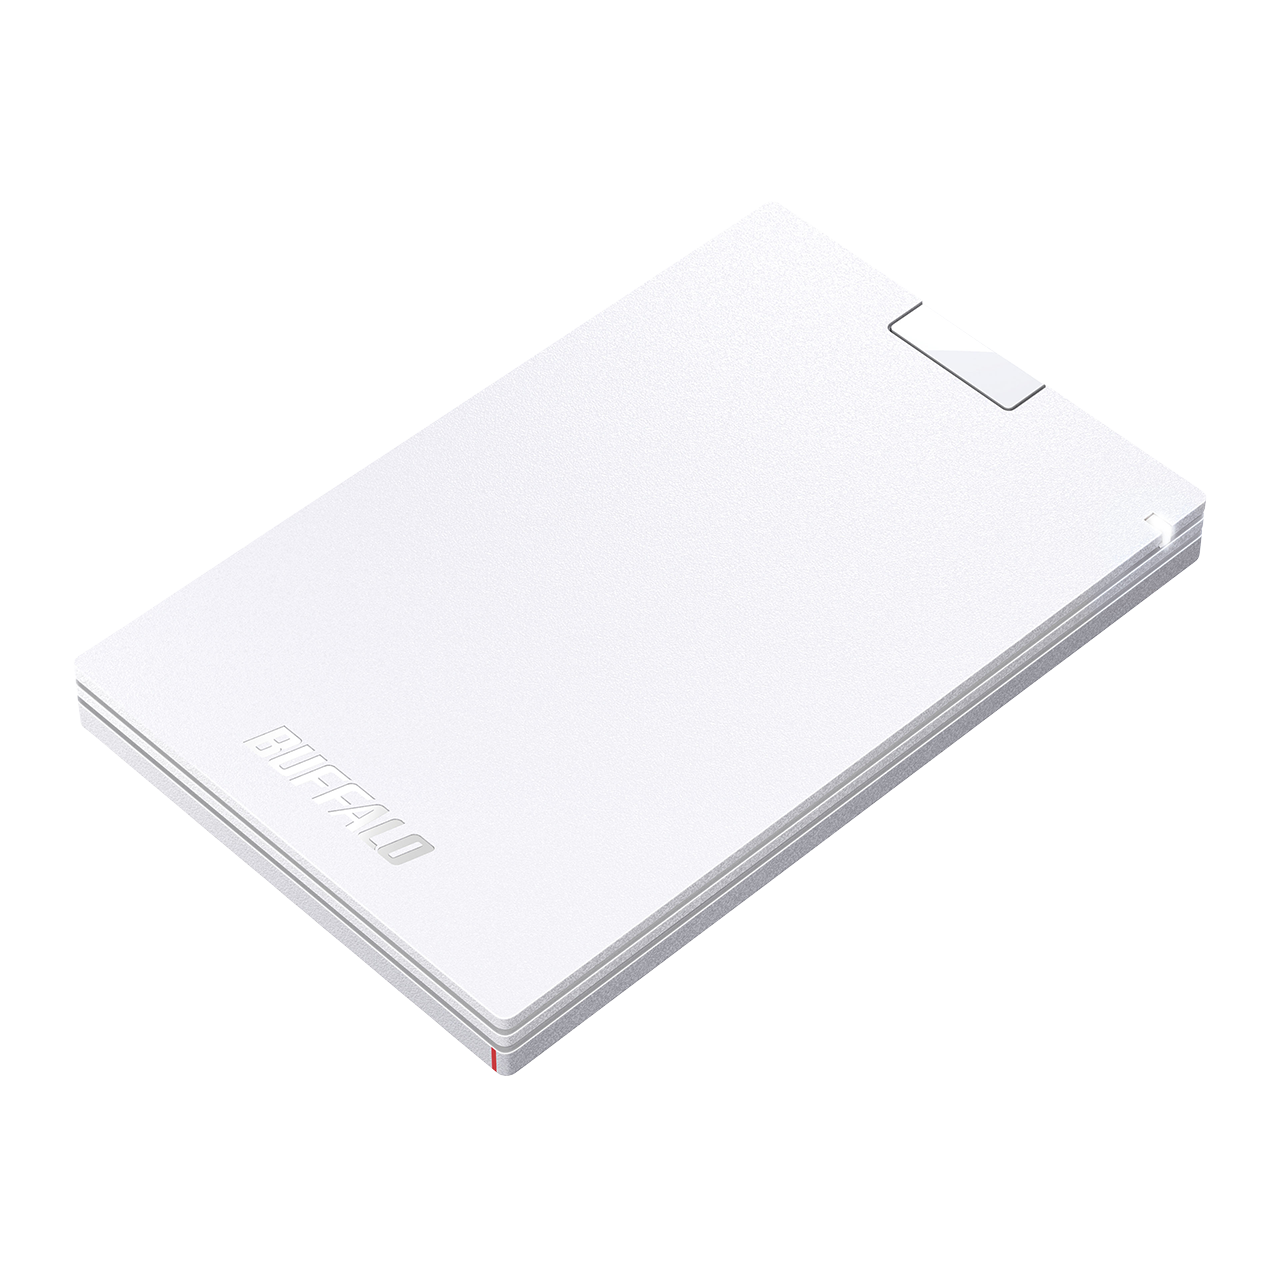 アウトレット・整備済》SSD-PG1.0U3-WC(保証1年) – buffalo-direct